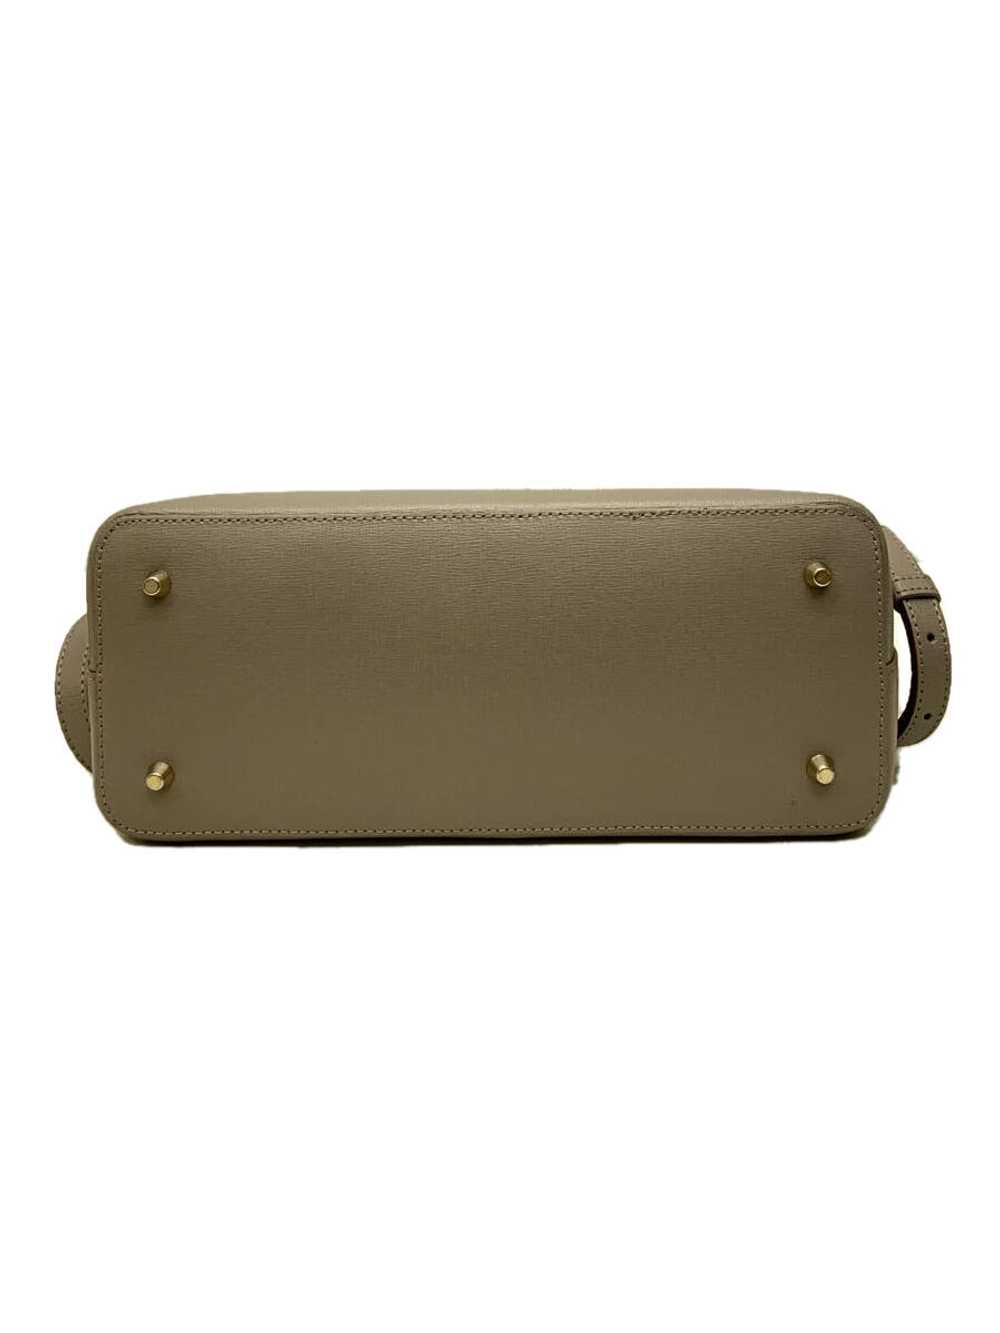 Furla/Handbag/Leather/Gray/Plain Bag - image 4